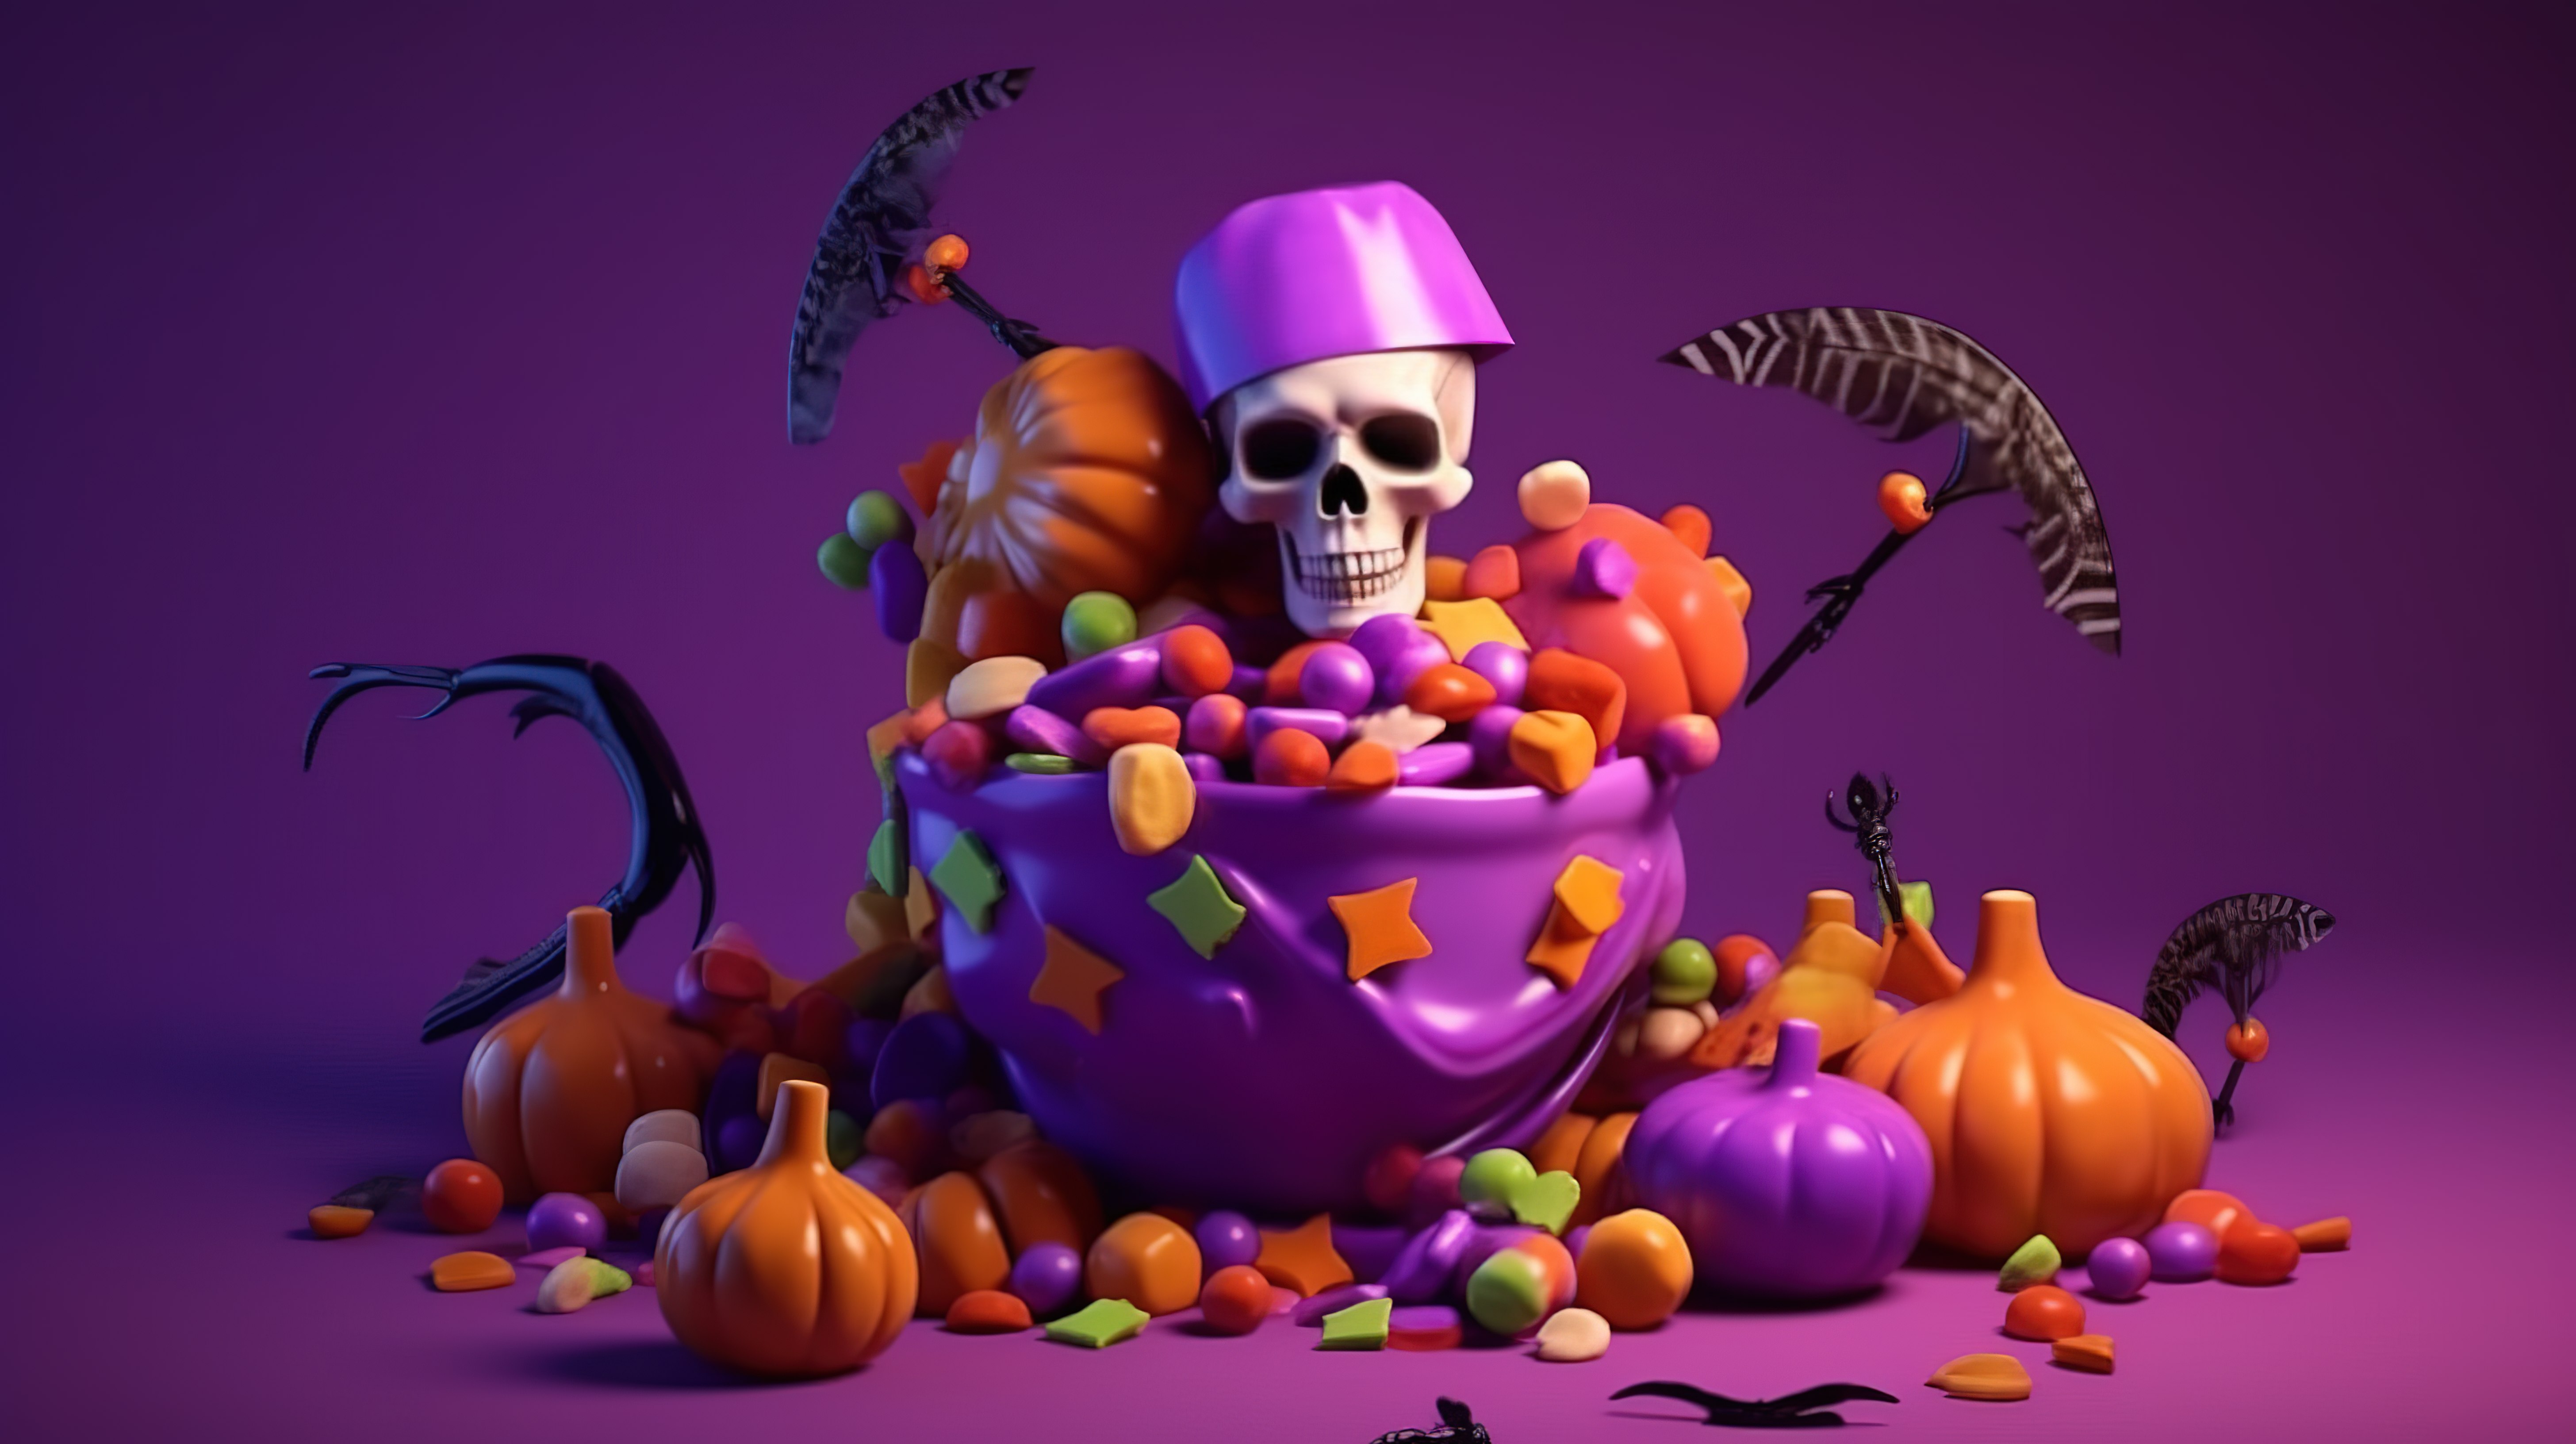 怪异的喜悦女巫帽子骨头头骨坟墓南瓜五颜六色的糖果和糖果等等都漂浮在 3D 渲染的紫色背景上，庆祝欢乐的万圣节图片